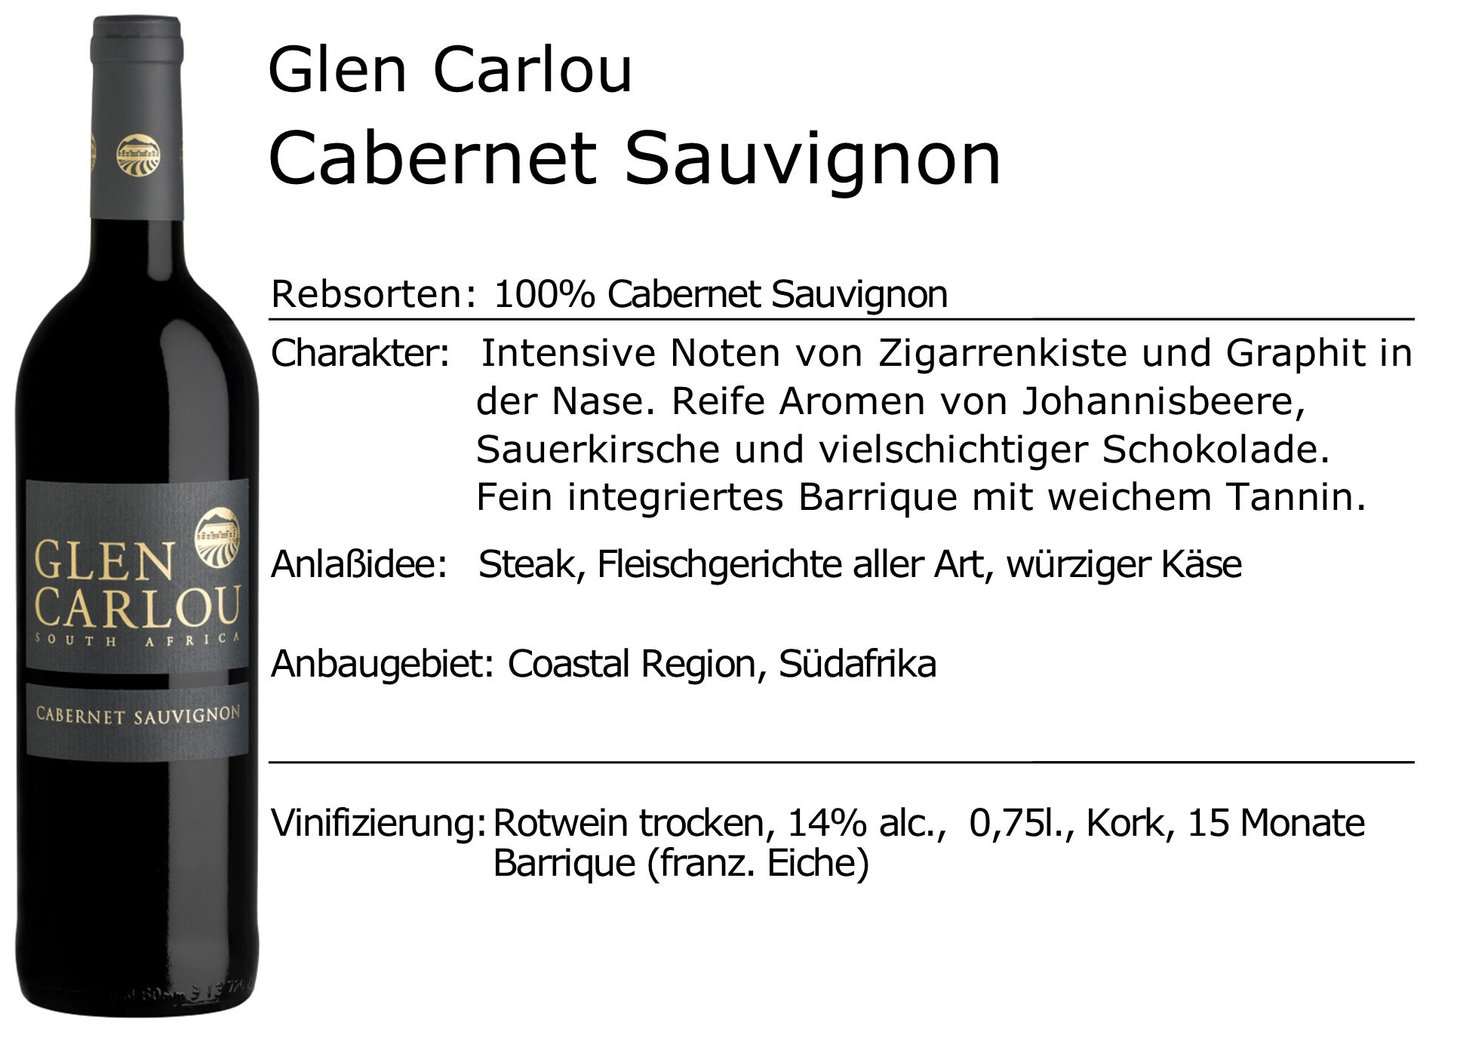 Glen Carlou Cabernet Sauvignon 2020